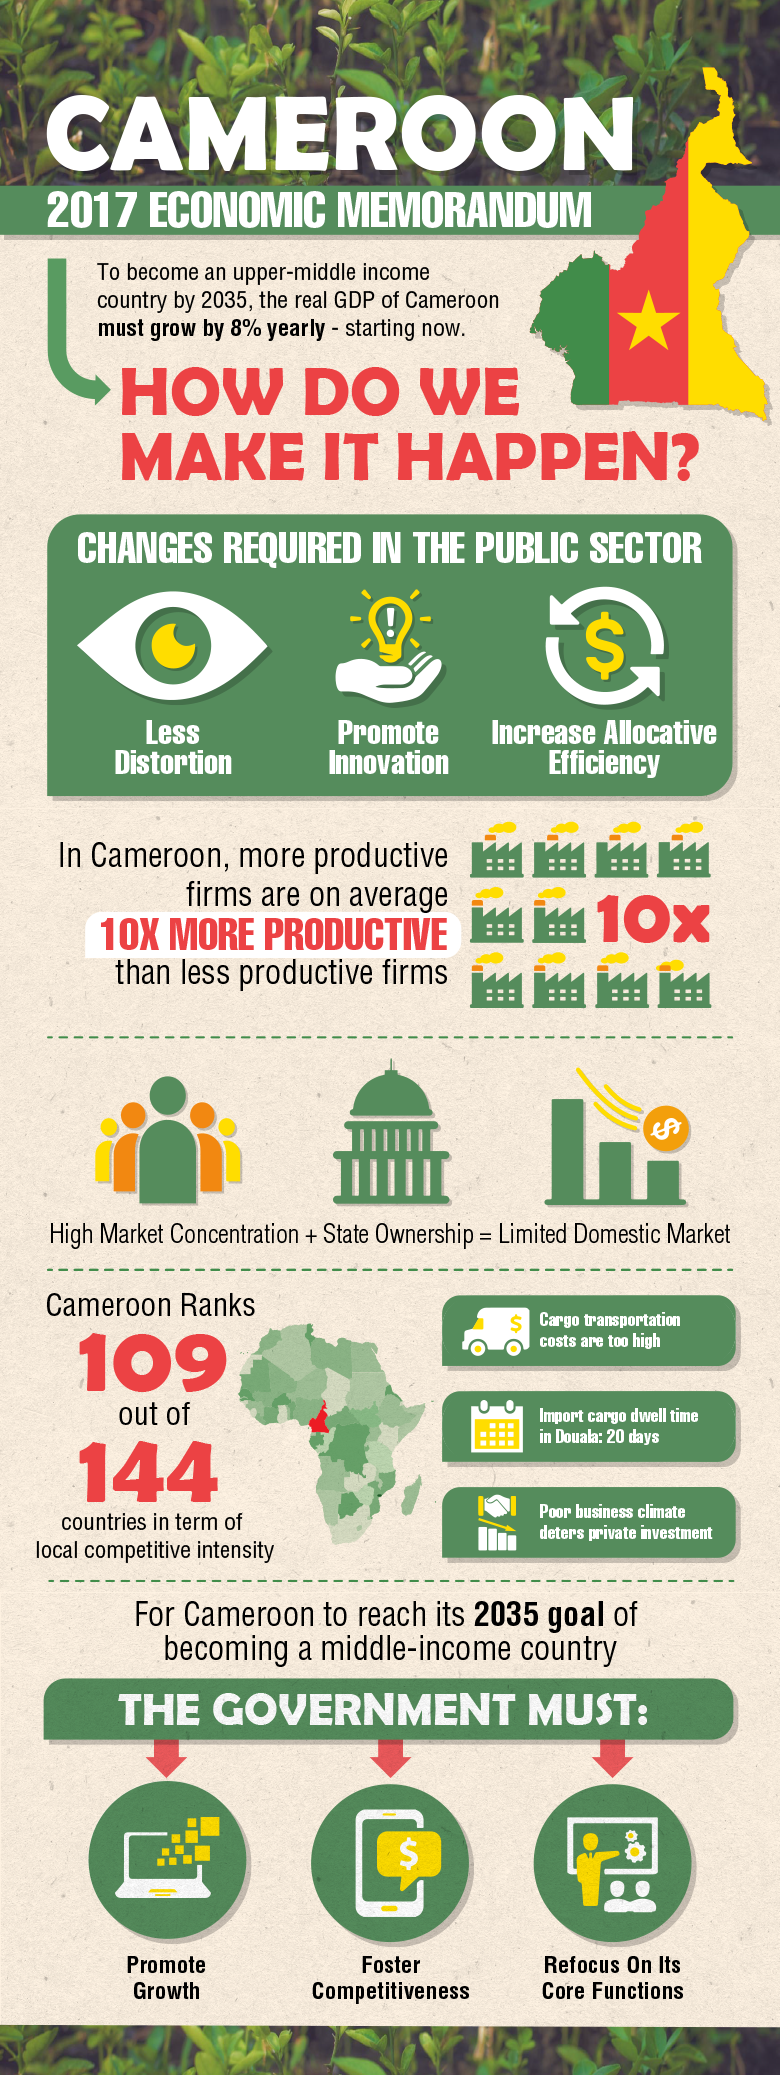 Cameroon 2017 Economic Memorandum